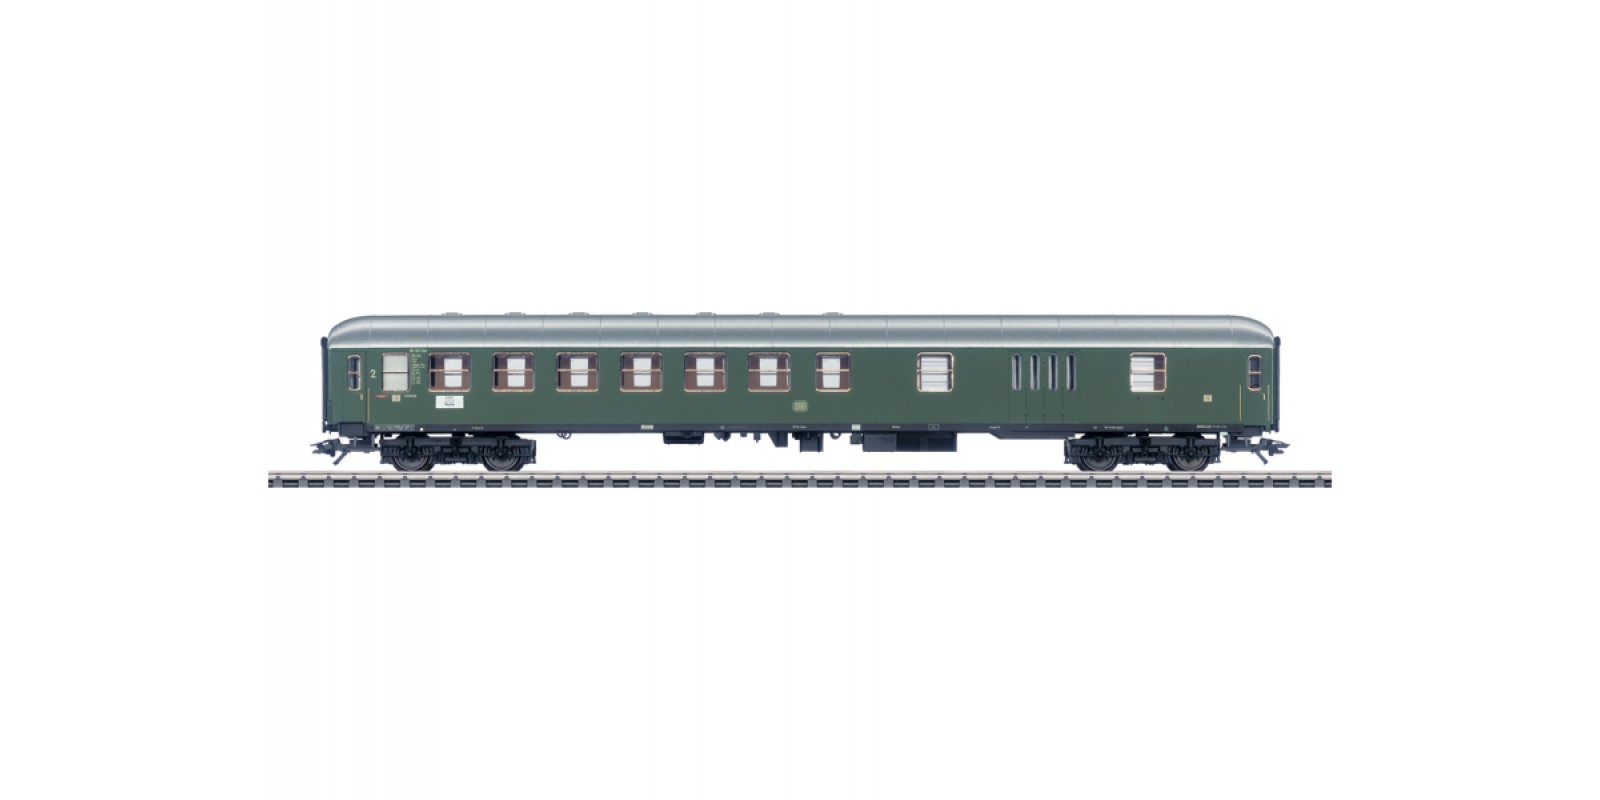 43950 Express Train Passenger Car.